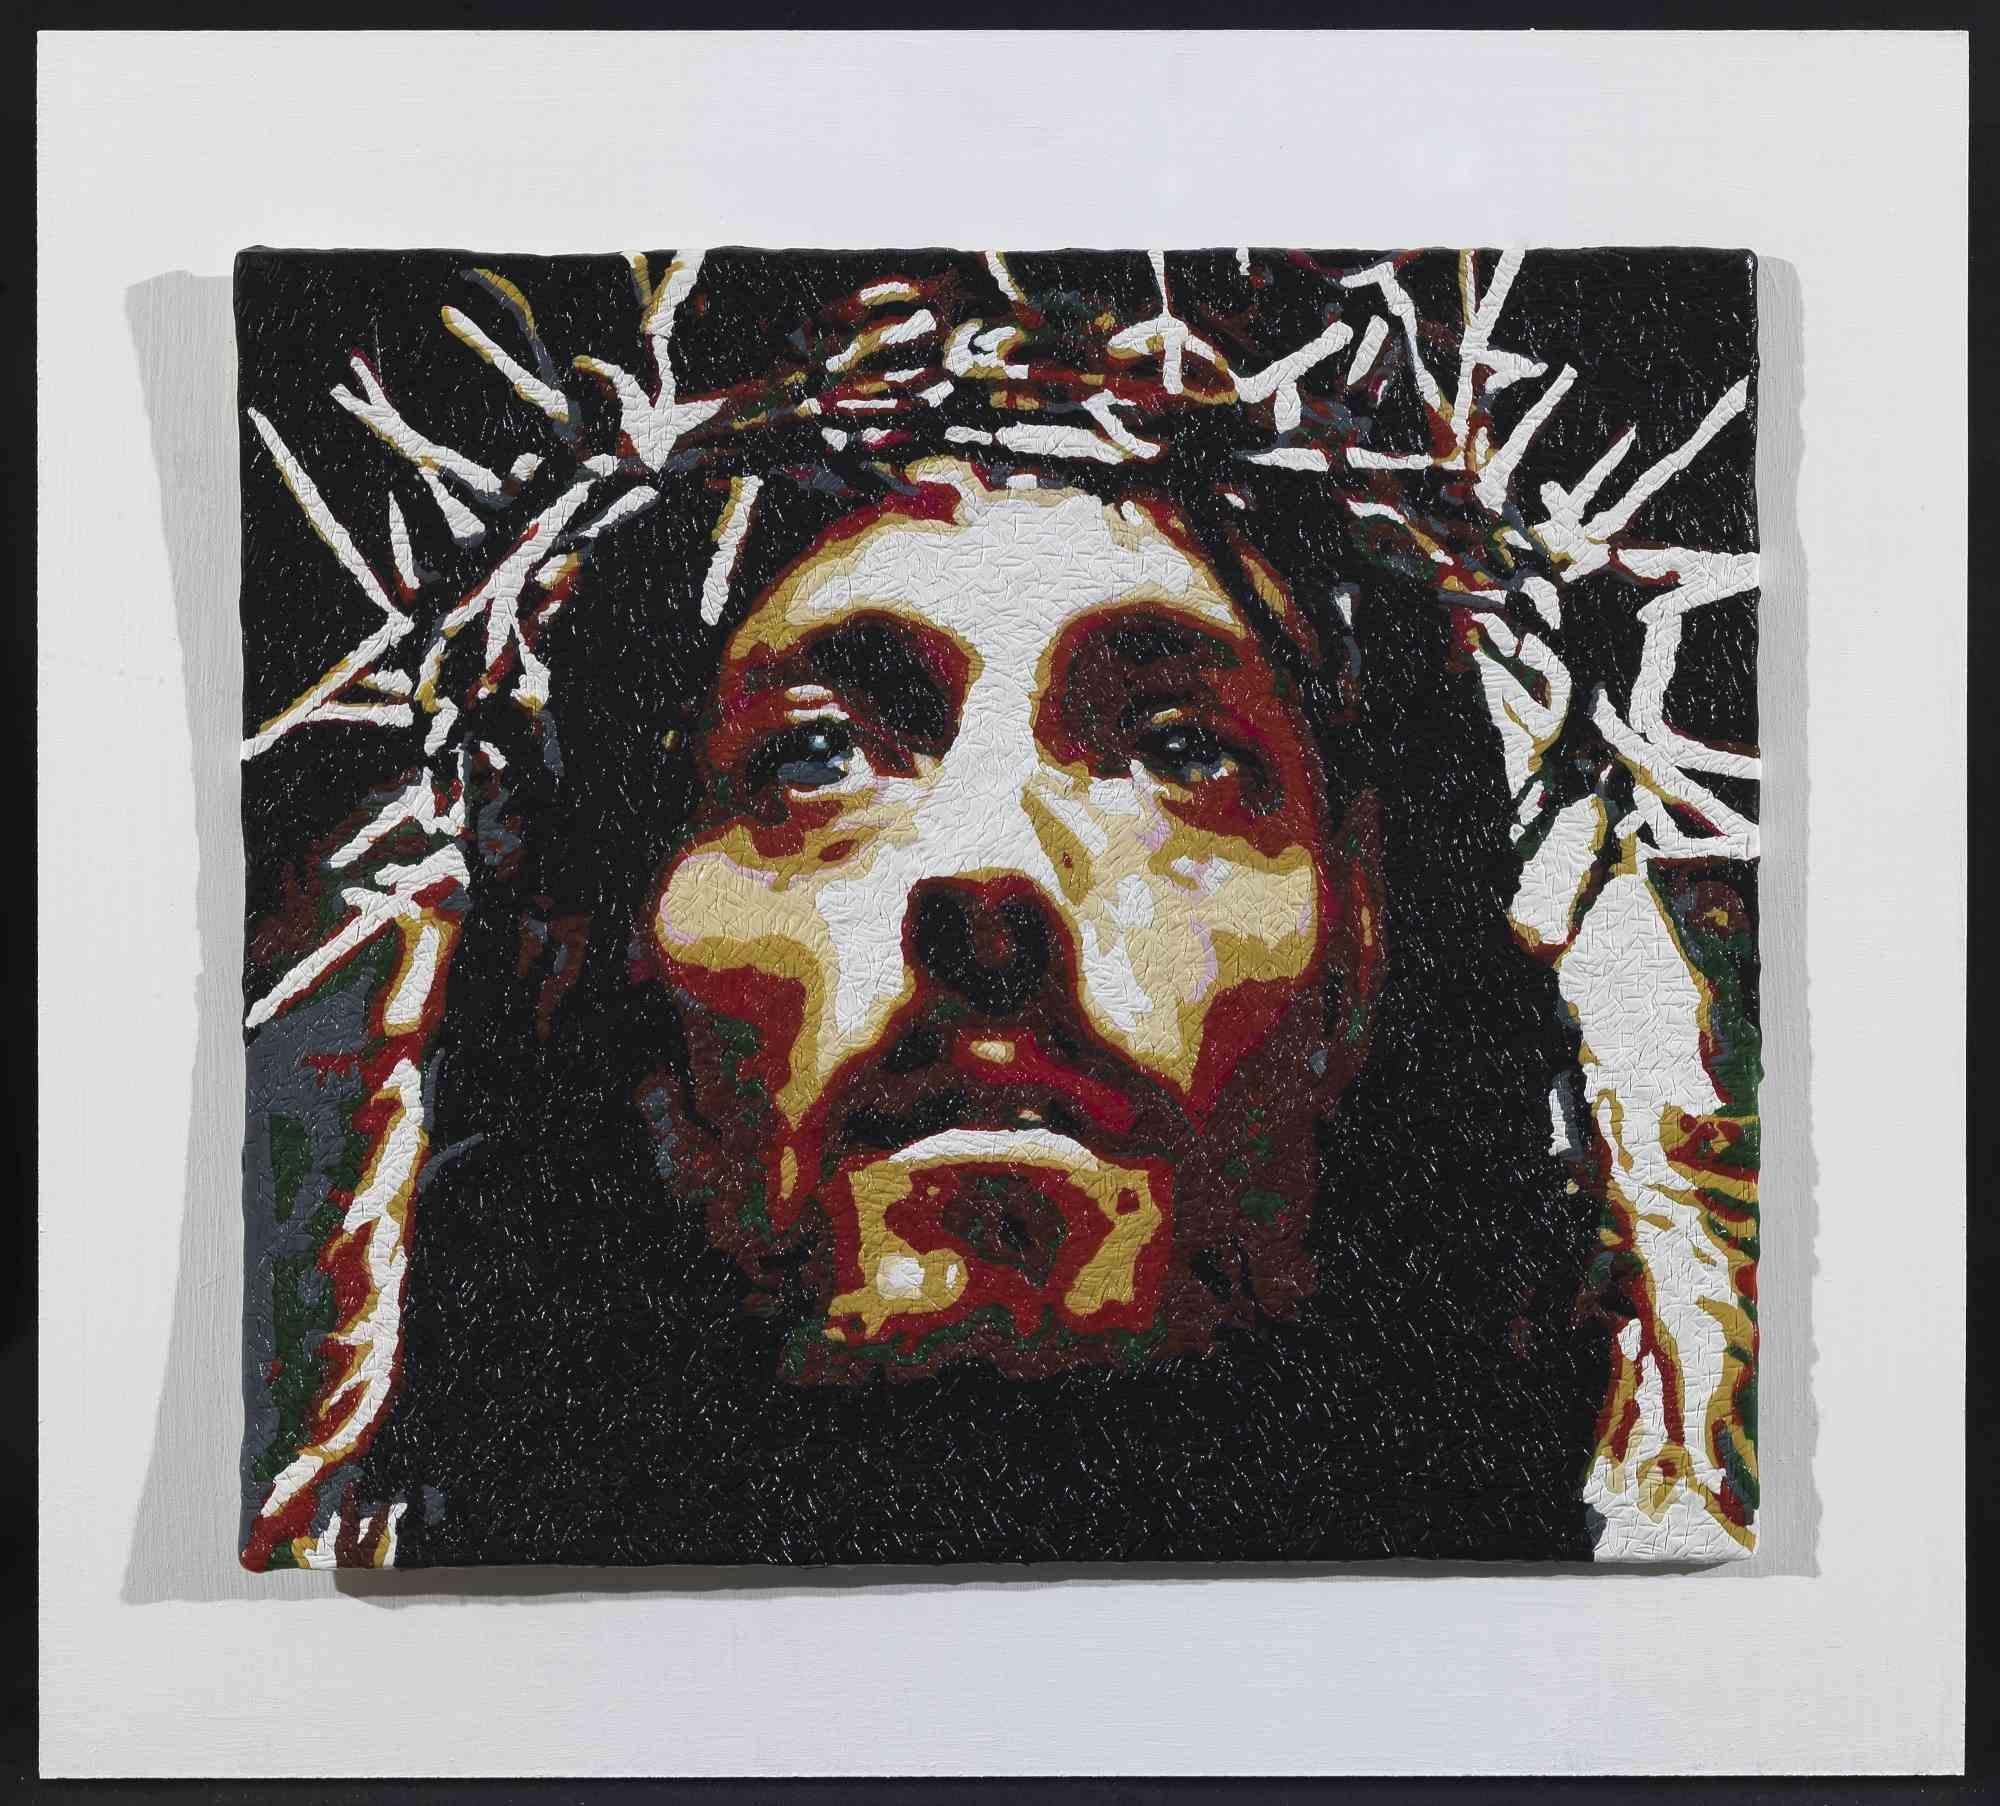 Jesus ist ein originelles zeitgenössisches Kunstwerk des italienischen Künstlers Maurizio Savini (geb. 1962 in Rom) aus dem Jahr 2014. 

Original Enkaustik von Kaugummi auf Karton. 

Handsigniert vom Künstler auf der Rückseite der Leinwand.

Das